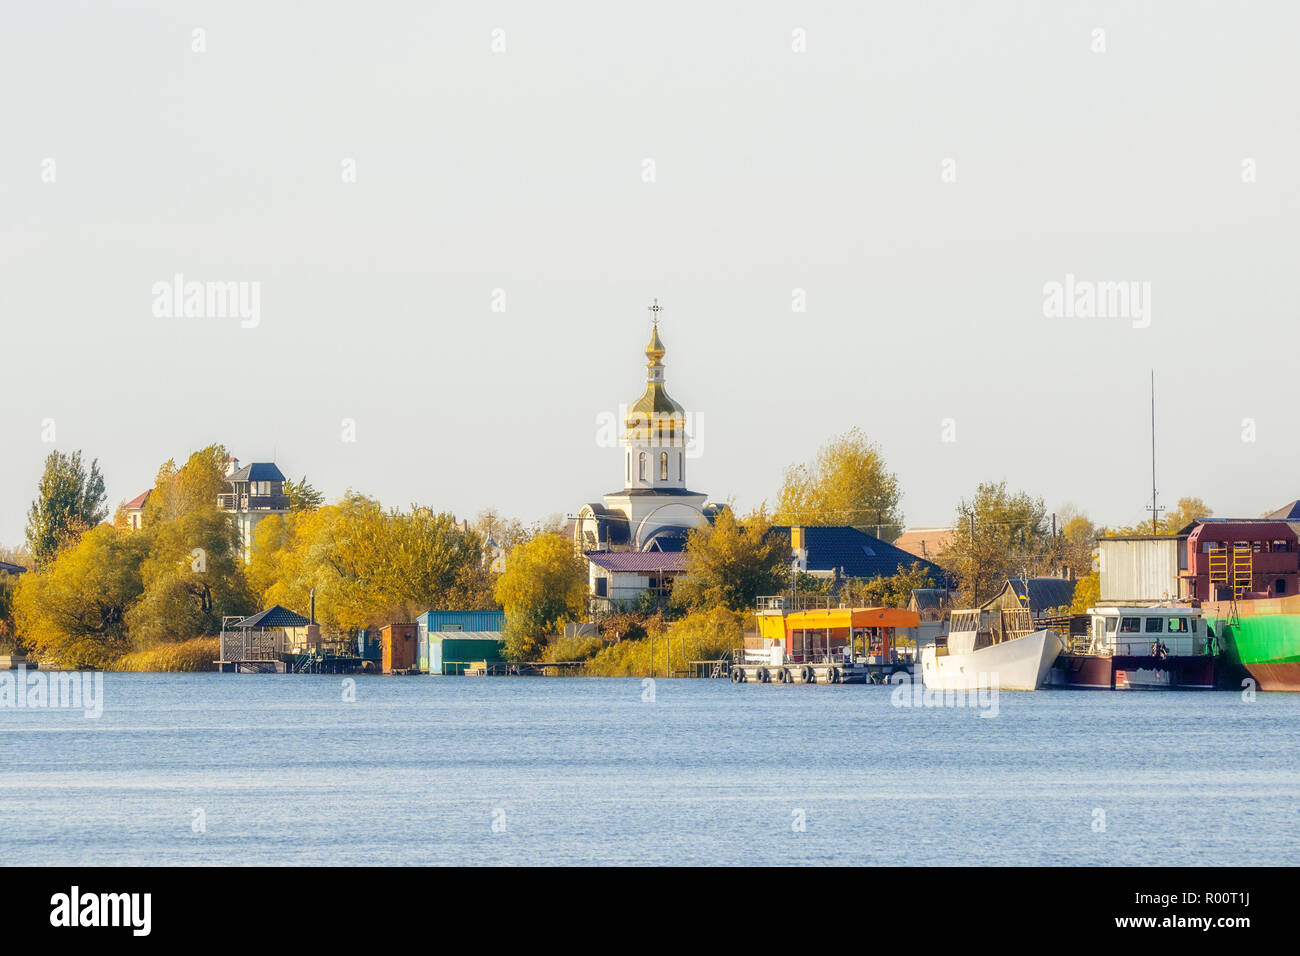 Immagine della Chiesa sulle rive del fiume in autunno presso il molo Foto Stock